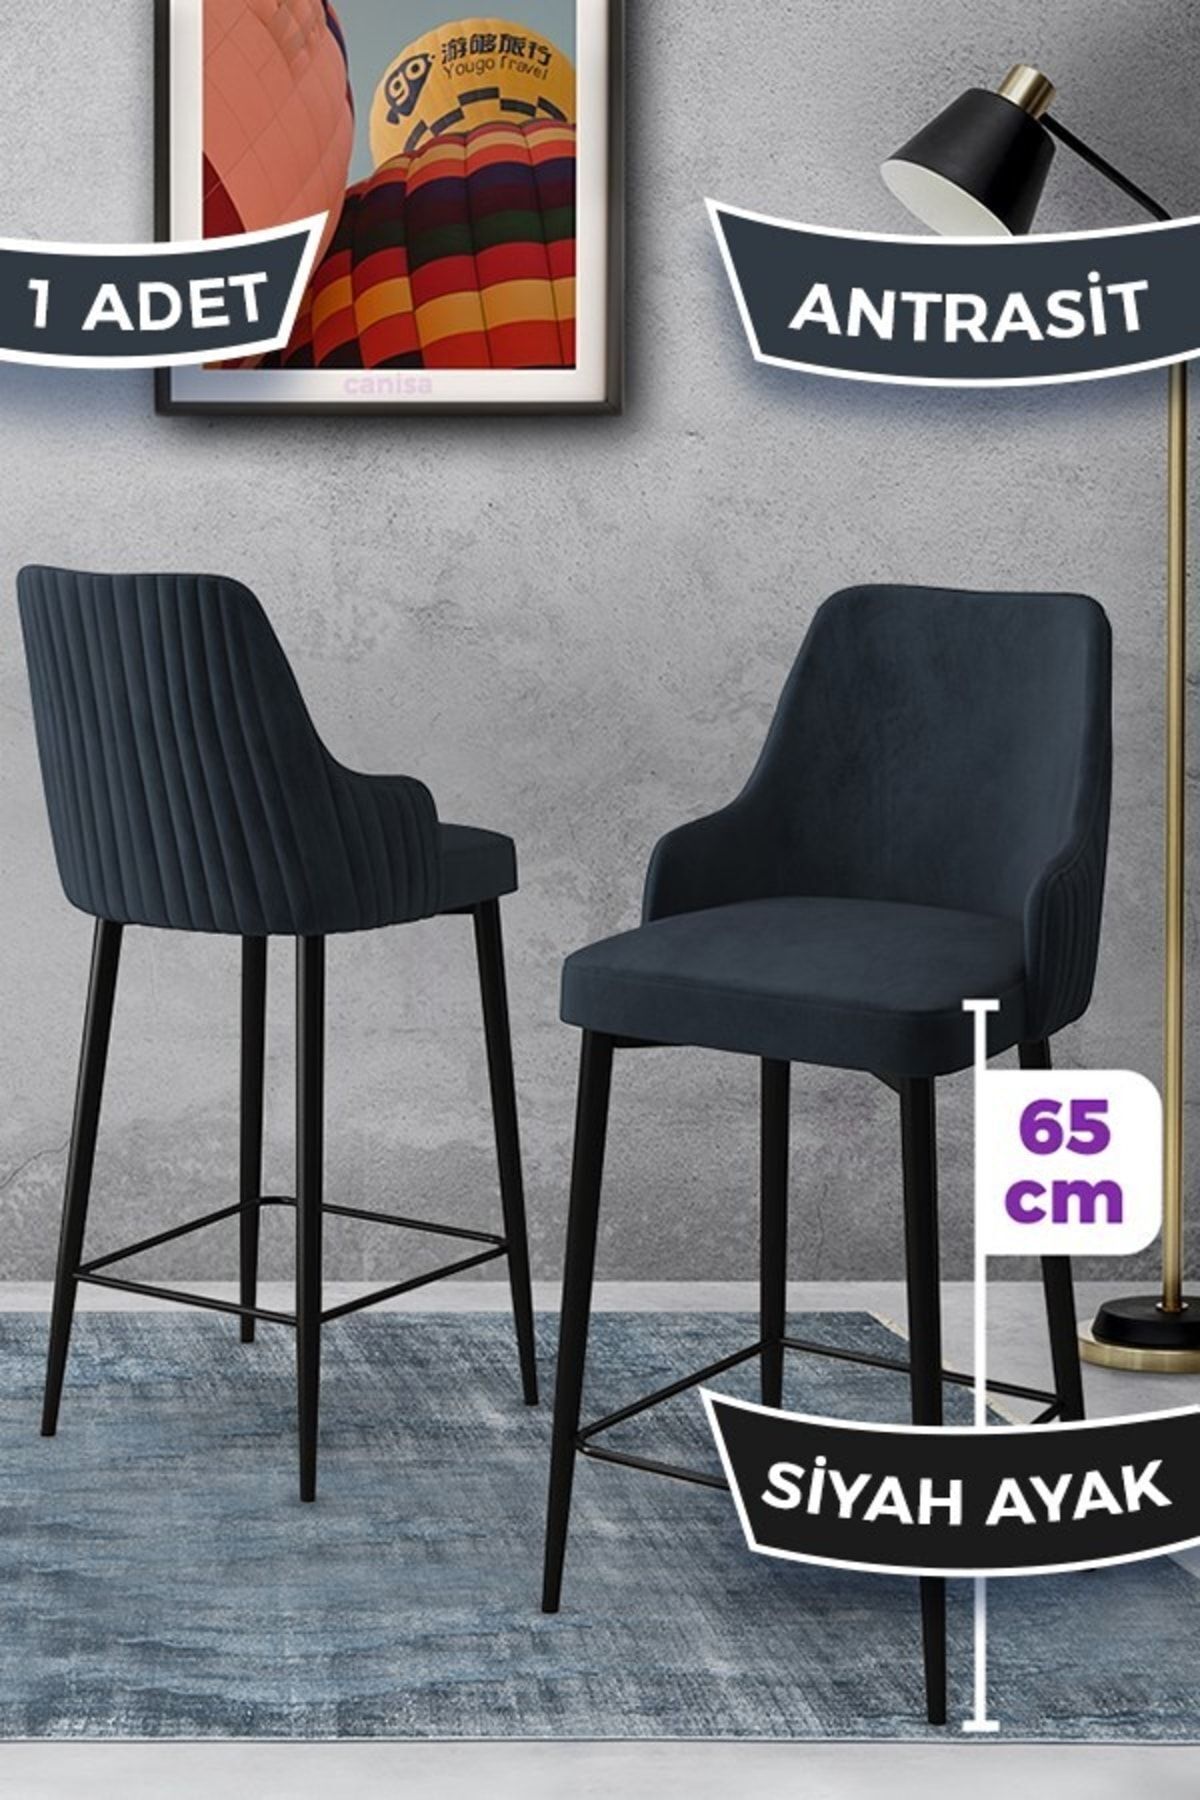 Canisa Tera Serisi 1 Adet 65 Cm Antrasit Ada Mutfak Bar Sandalyesi Babyface Kumaş Siyah Metal Ayaklı